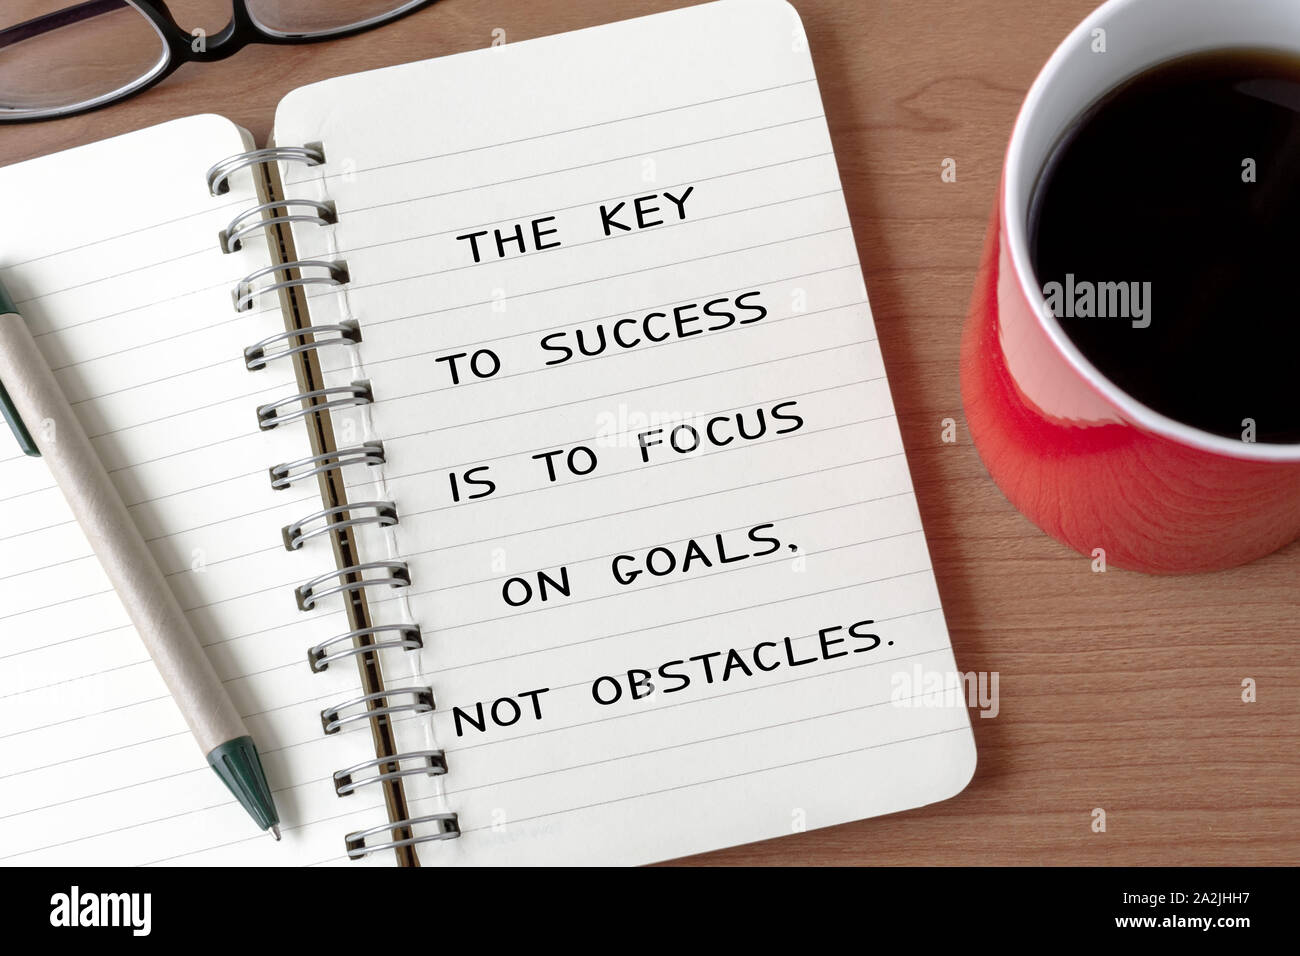 Motivierende und inspirierende Zitat - der Schlüssel zum Erfolg ist auf Ziele zu konzentrieren. Keine Hindernisse. Stockfoto